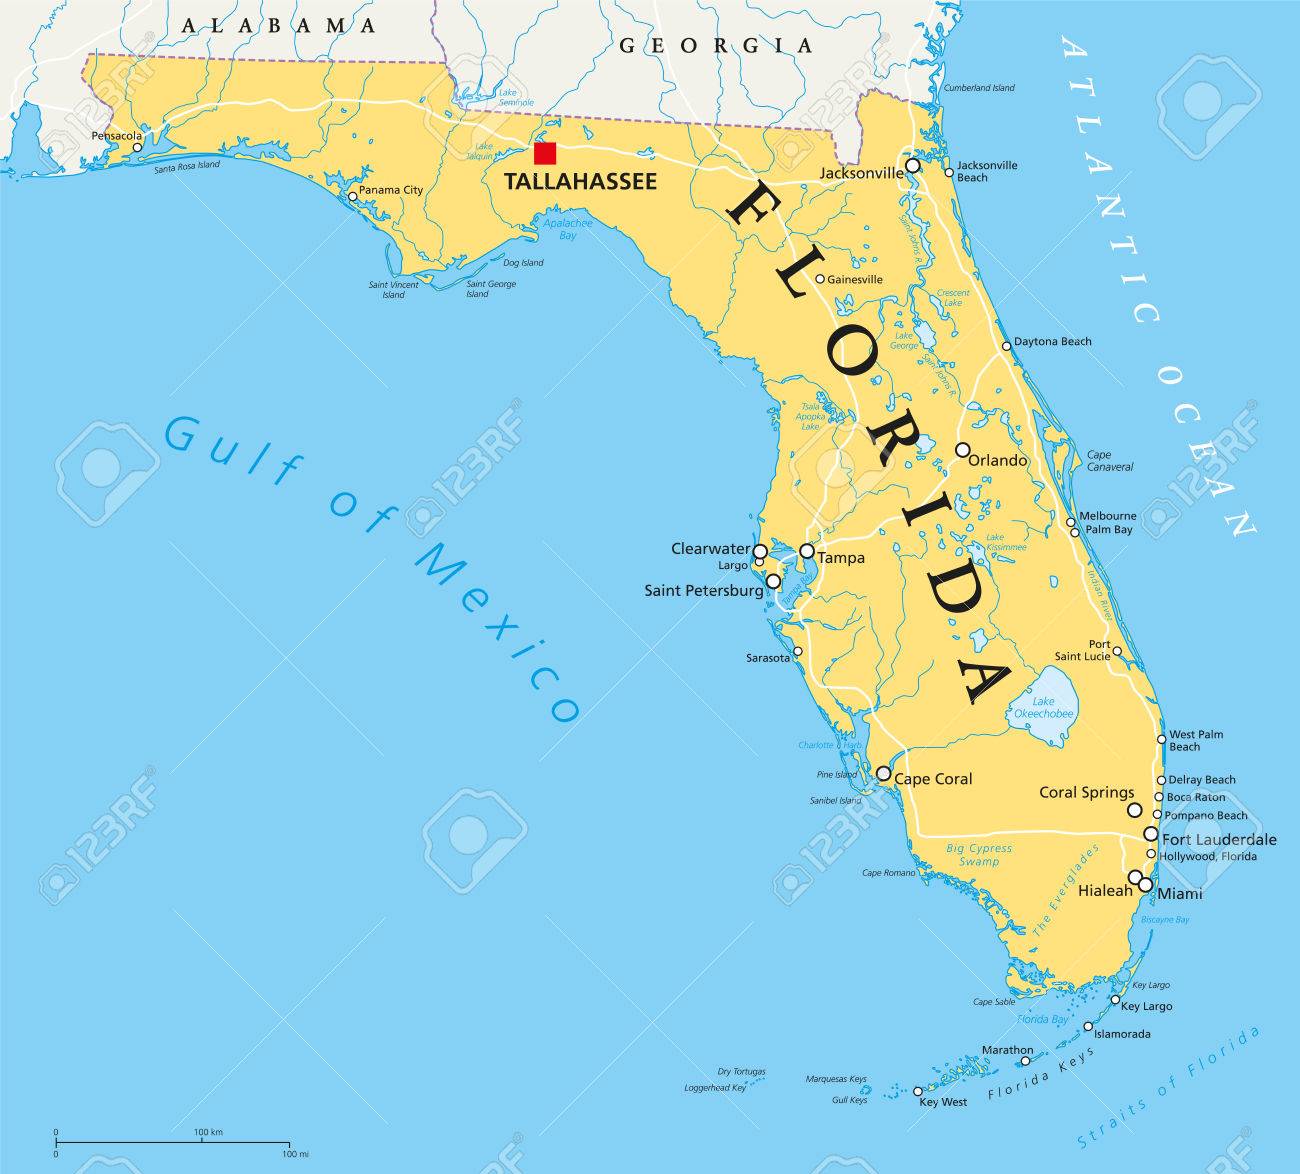 Nuevo mapa migratorio: Florida y Utah ganan posiciones